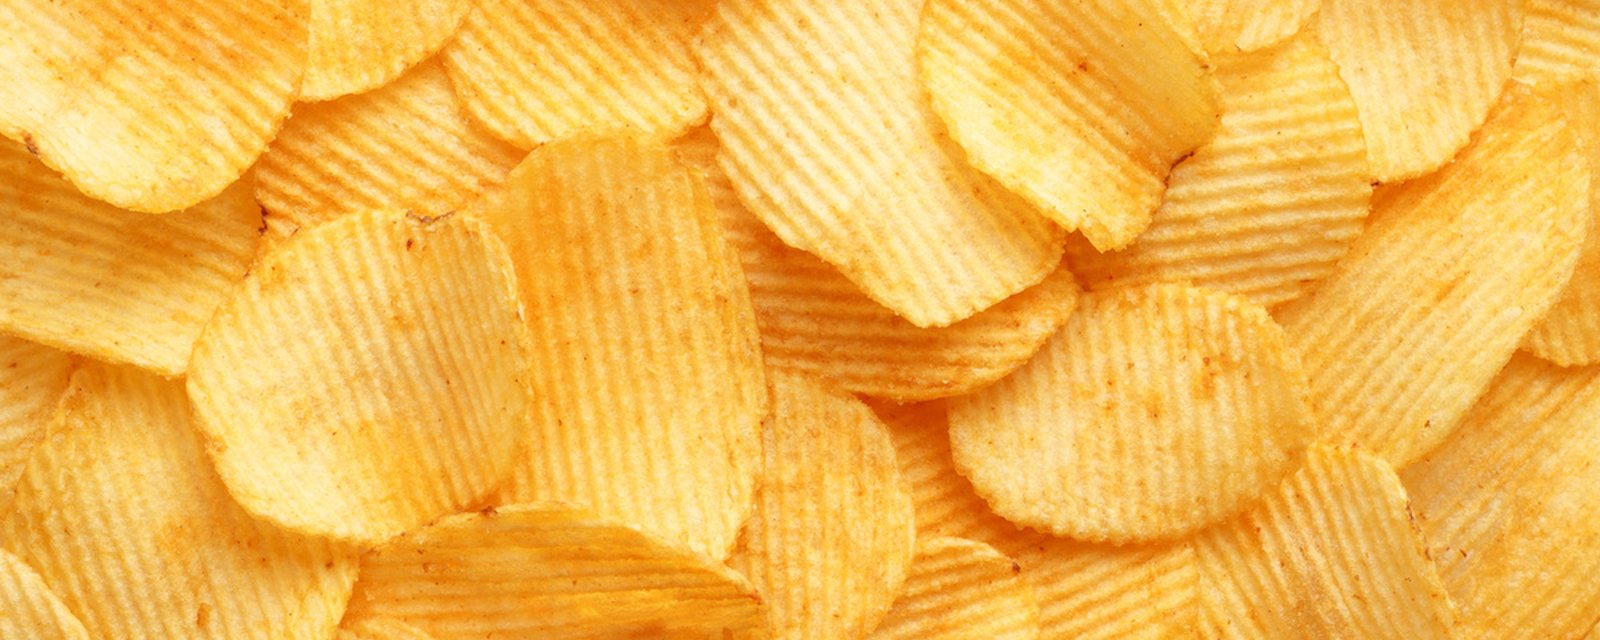 Un job d’appoint pour gourmand: être payé 10 000$ par année pour manger des chips!